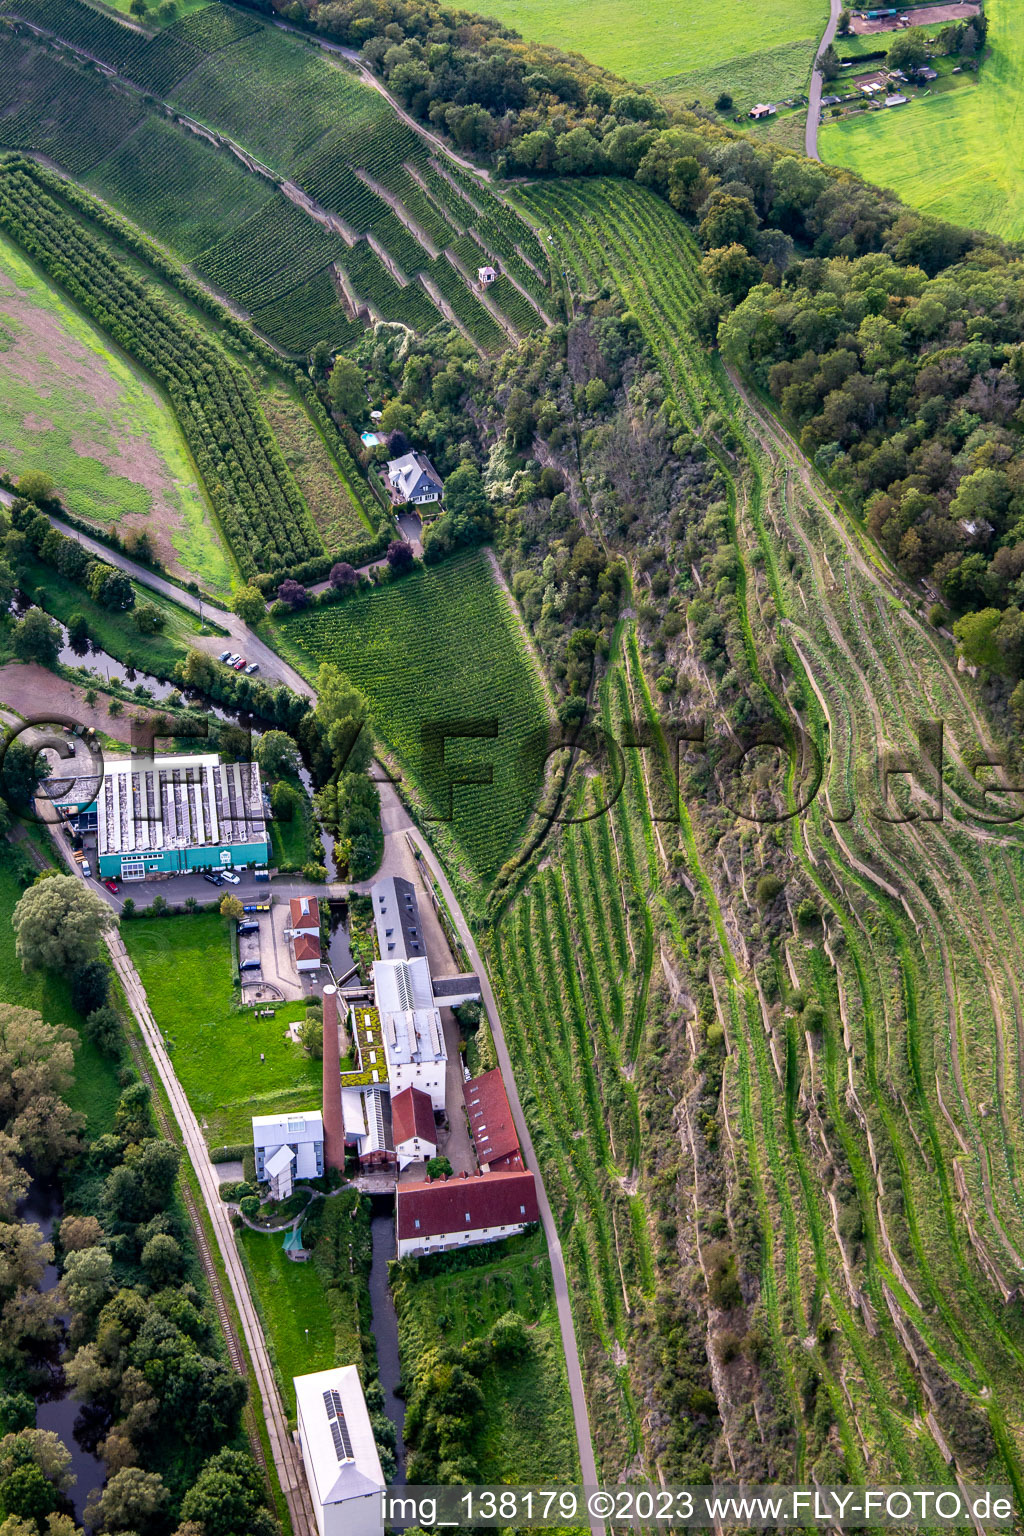 Aerial photograpy of CJD Wolfstein, Niedermühle branch and Klostermühle Odernheim KG winery in Odernheim am Glan in the state Rhineland-Palatinate, Germany